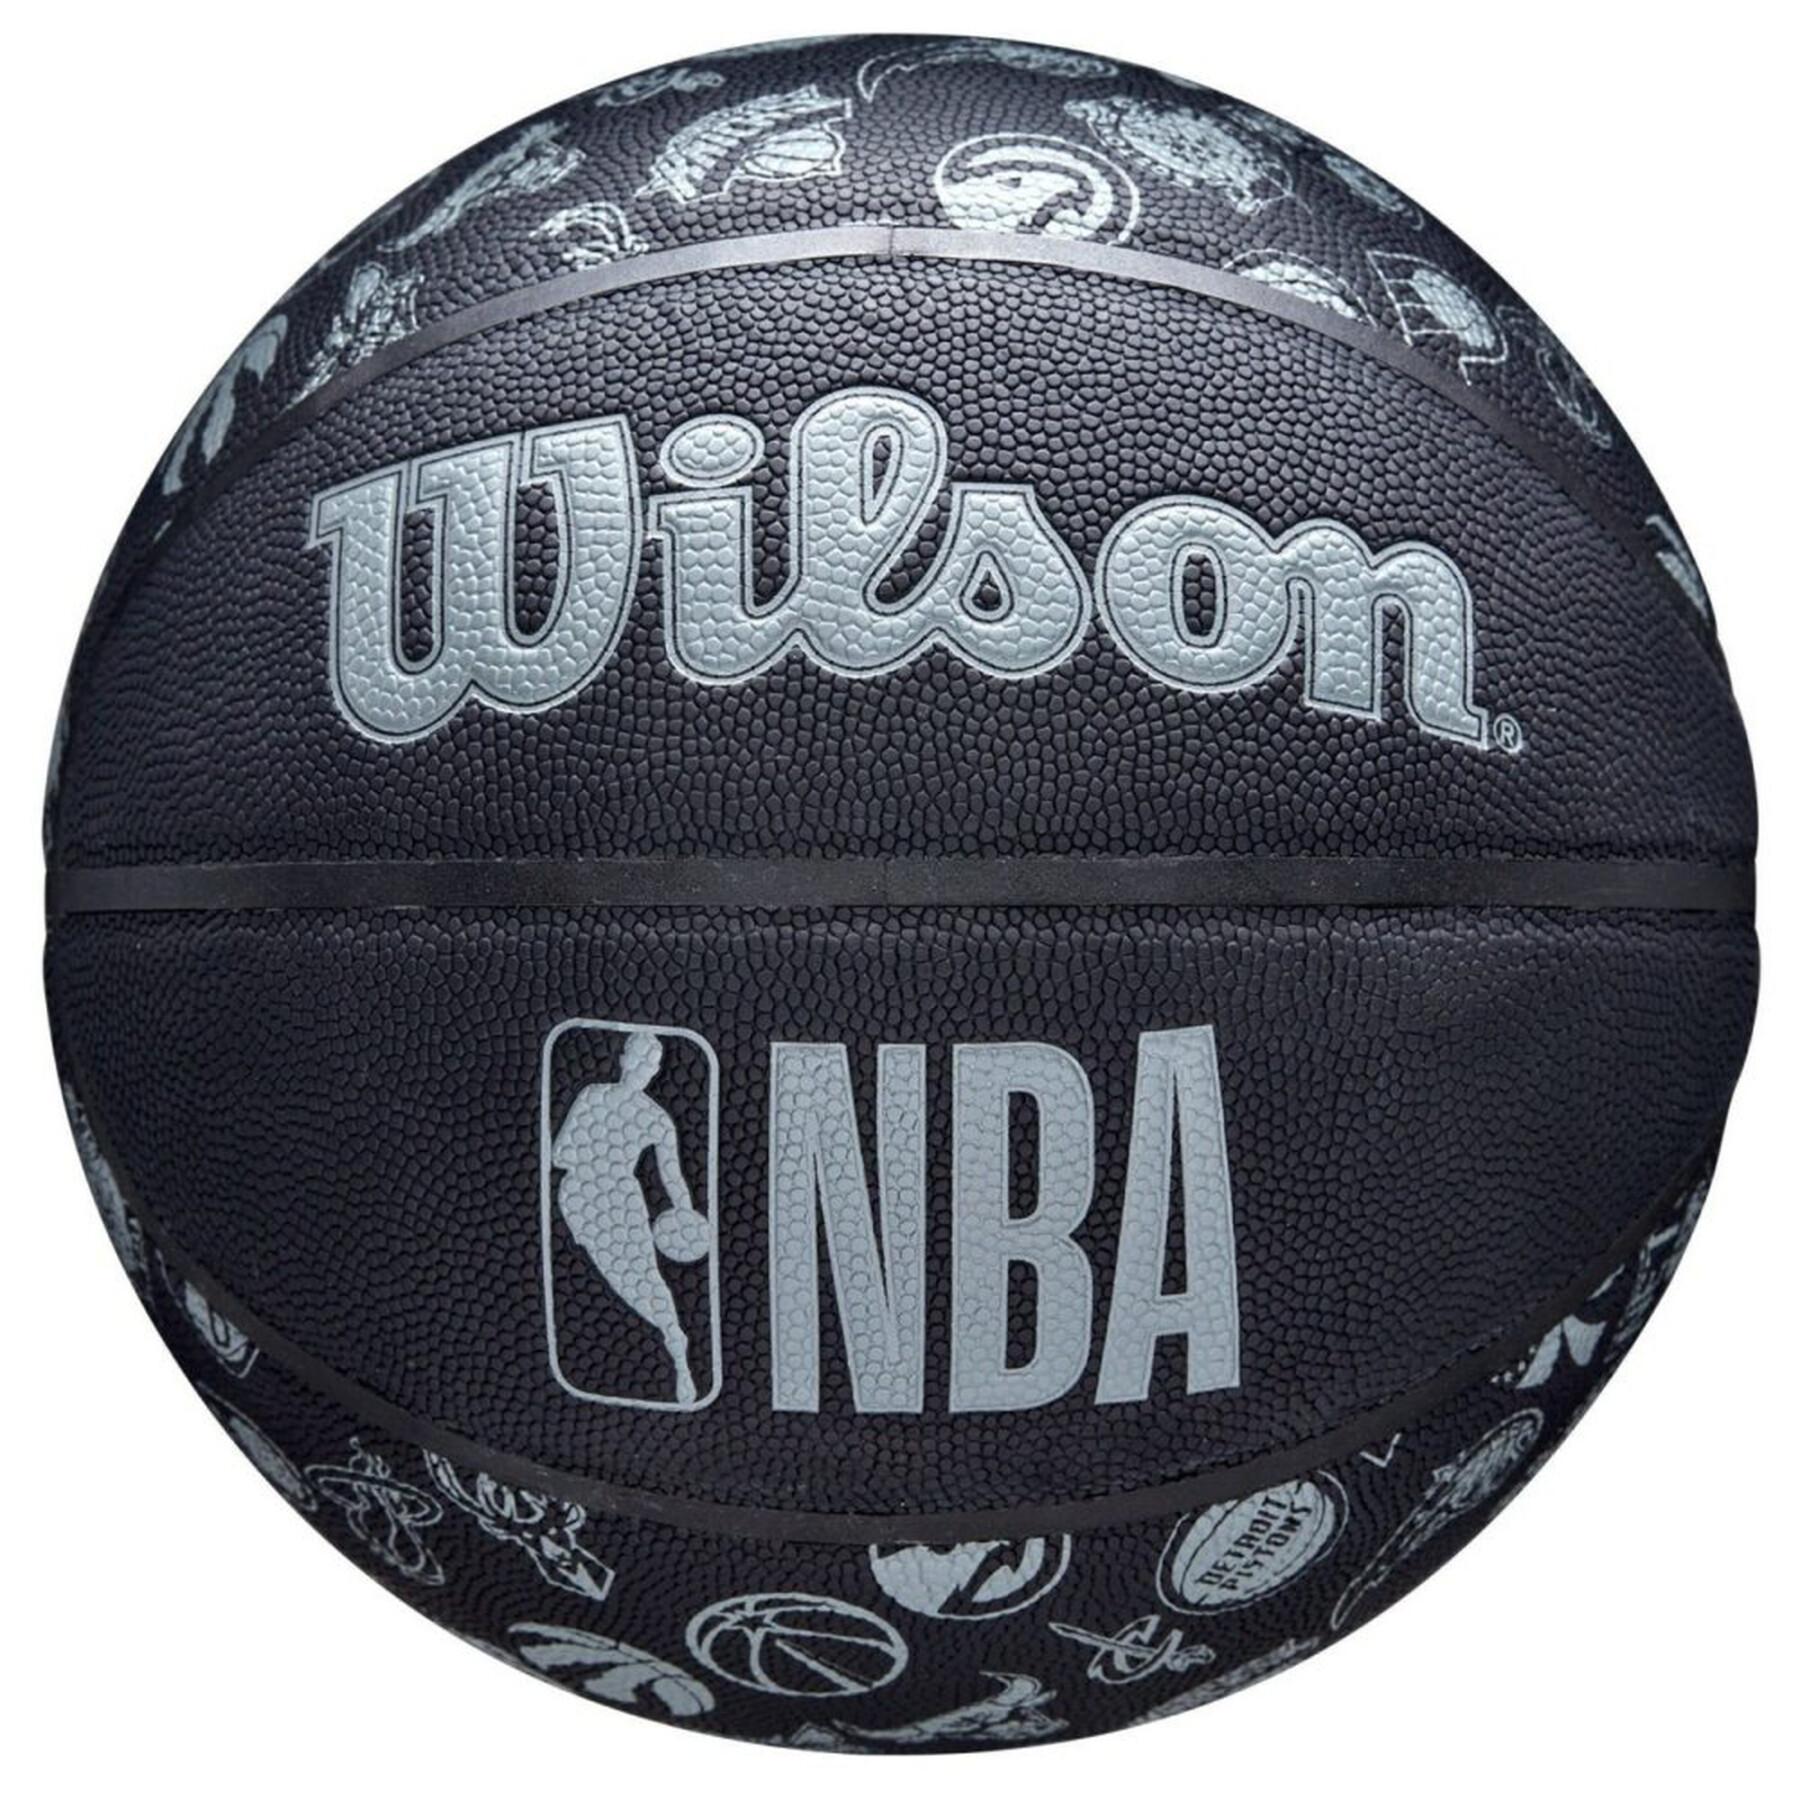 Pallone da basket Wilson Team NBA